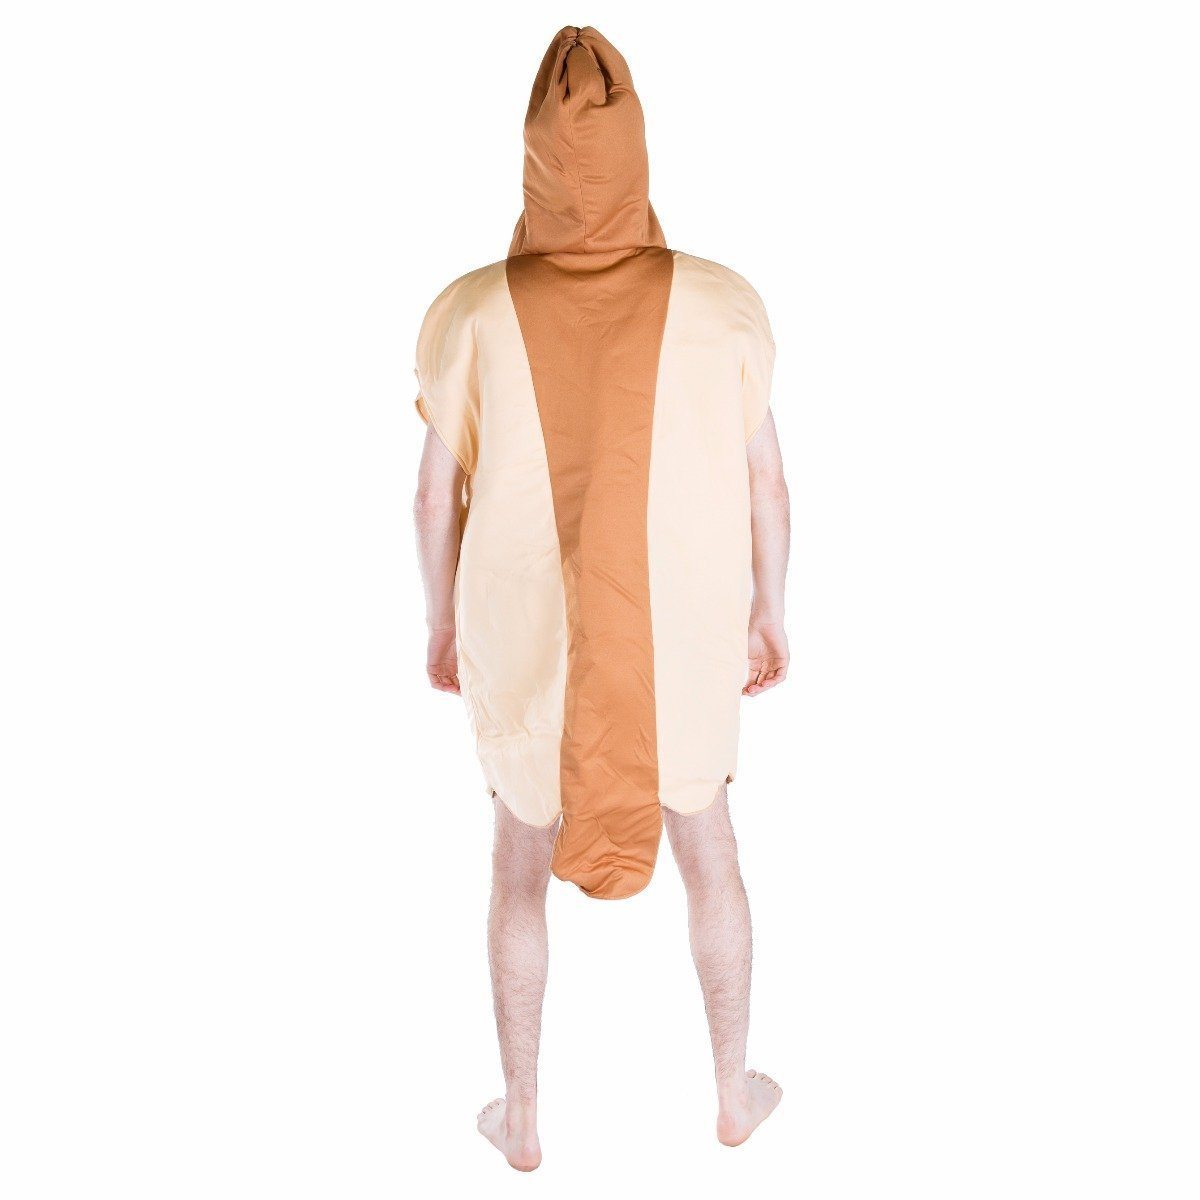 Costume da Hot Dog